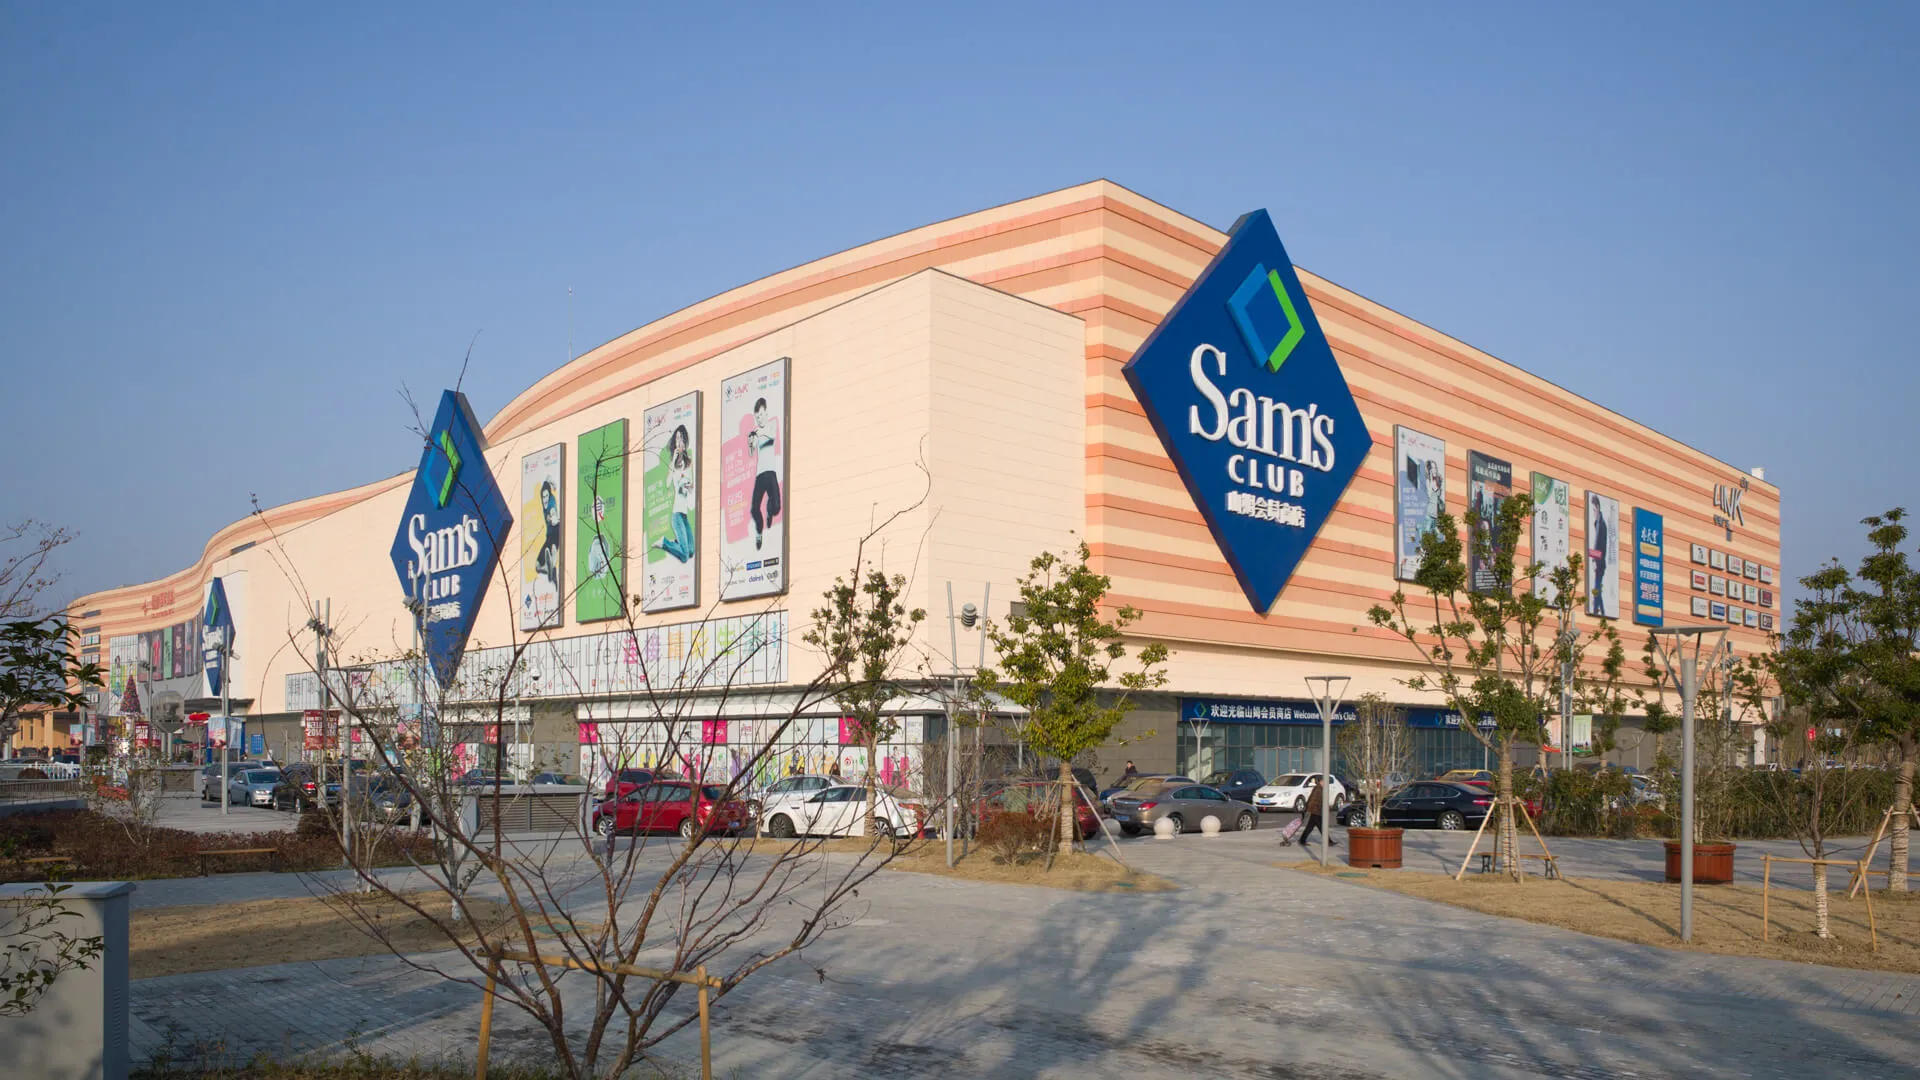 中国苏州- 2014年1月19日:新开业的Link city购物中心/购物中心设有会员折扣店“山姆会员俱乐部”-图片。